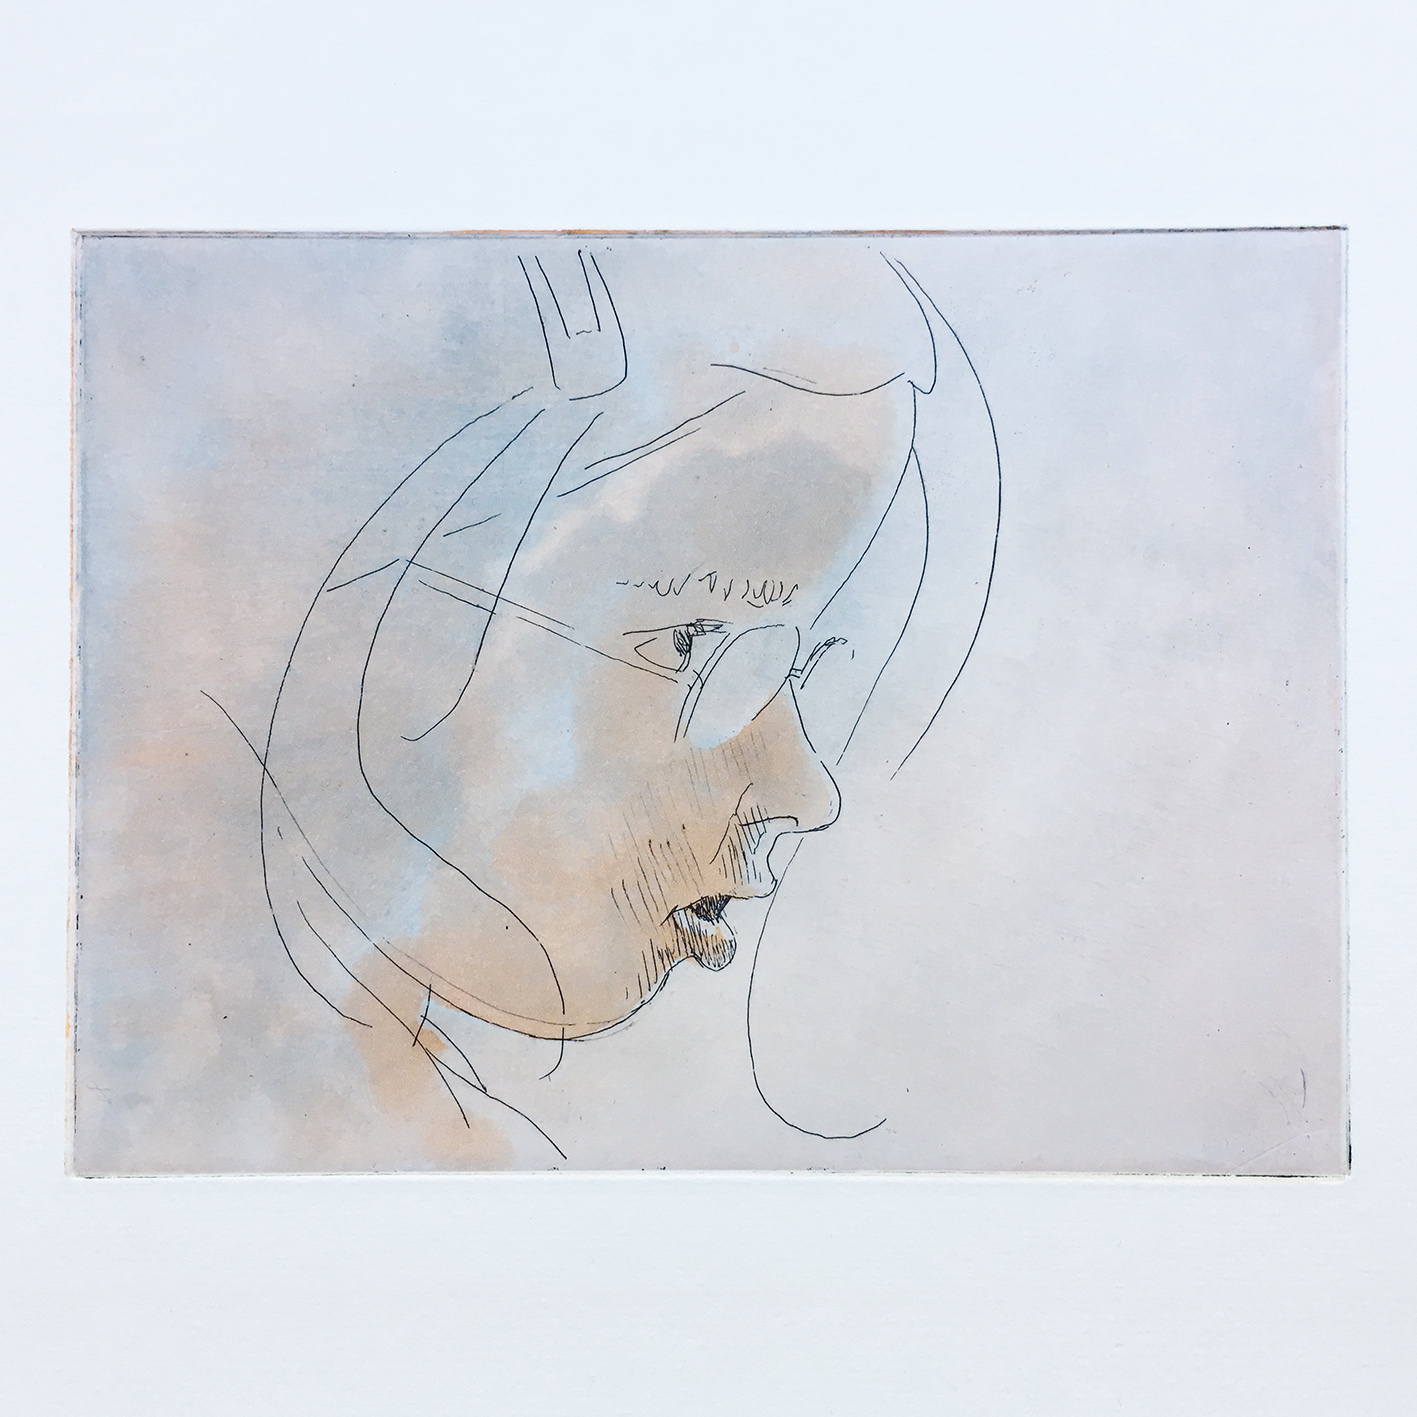 Radierung und Aquatinta Pinselätzung auf Kupferplatte, 3-farbig, 16x12 cm